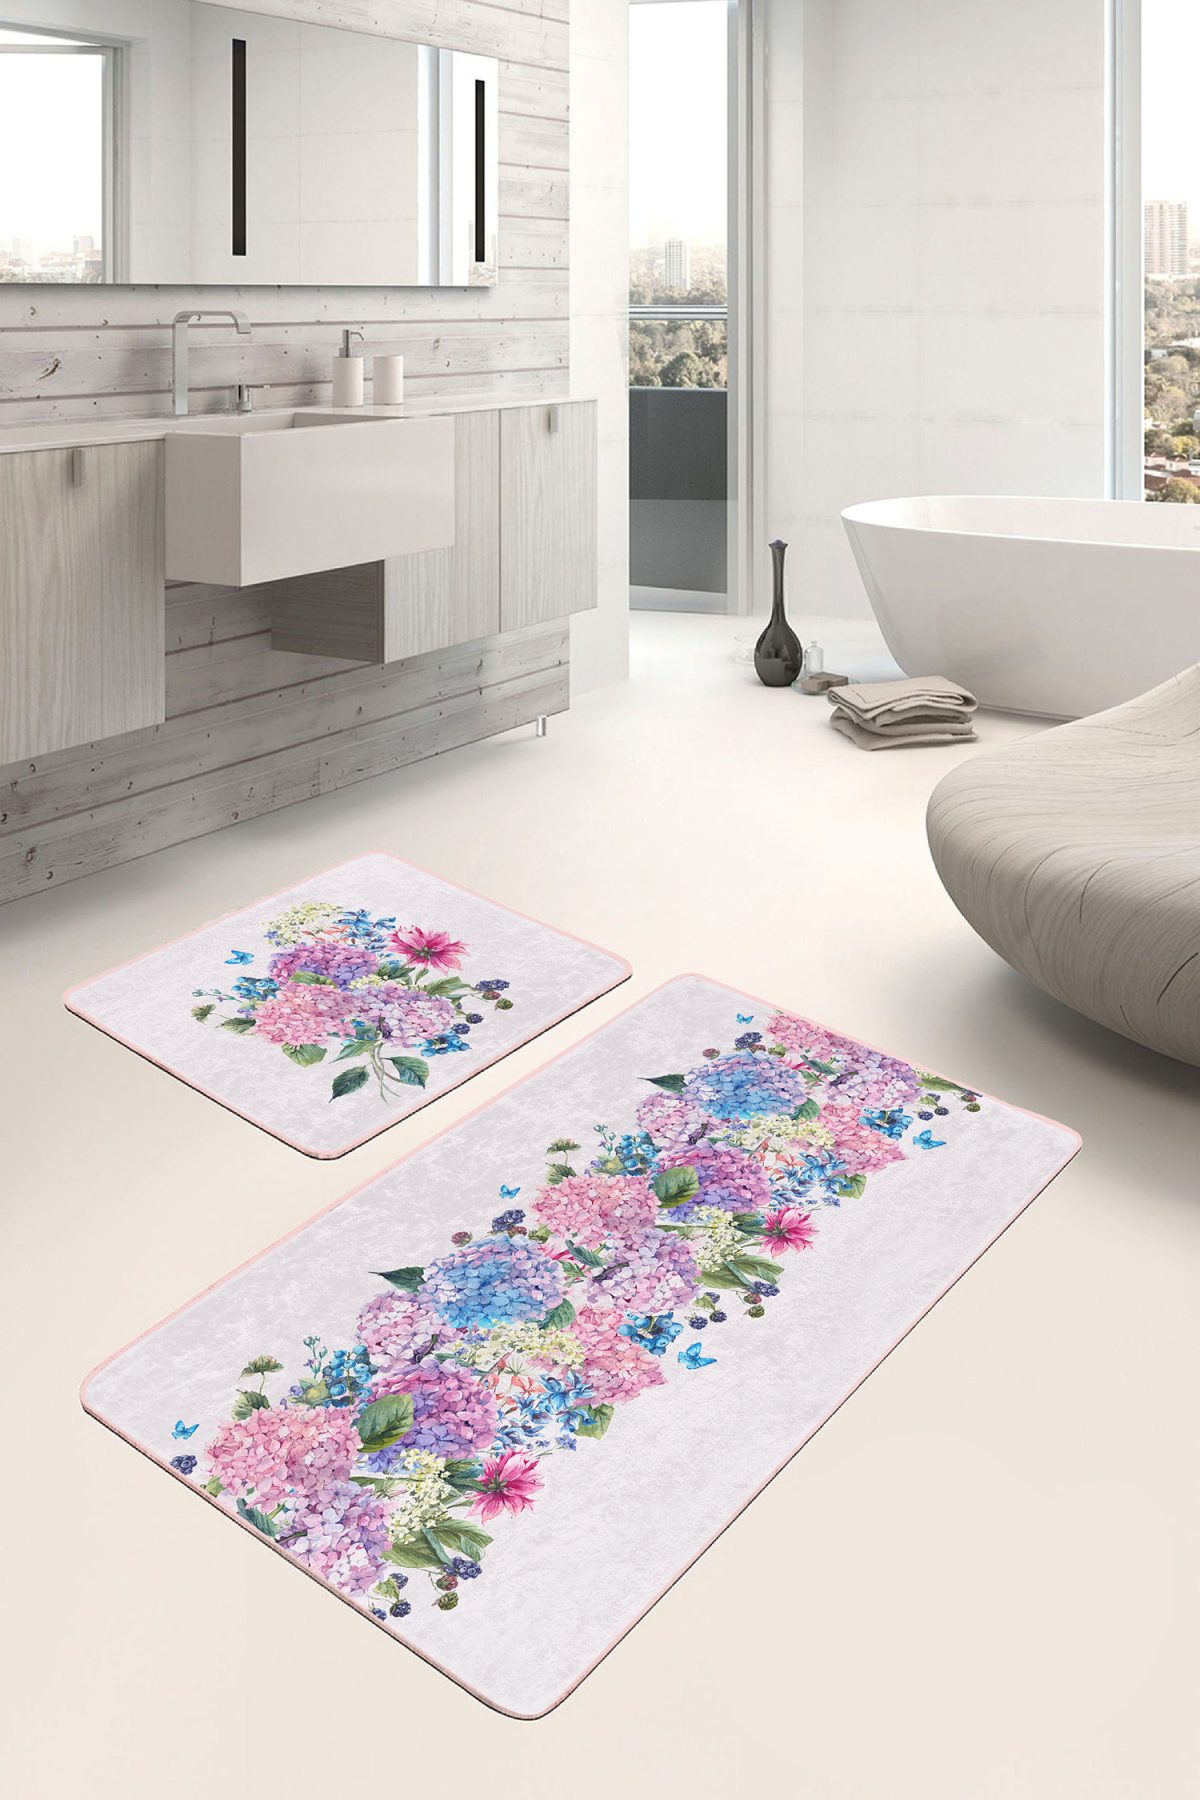 Rengarenk Ortanca Çiçekleri Özel Tasarım 2'li Kaymaz Tabanlı Banyo & Mutfak Paspas Takımı Realhomes